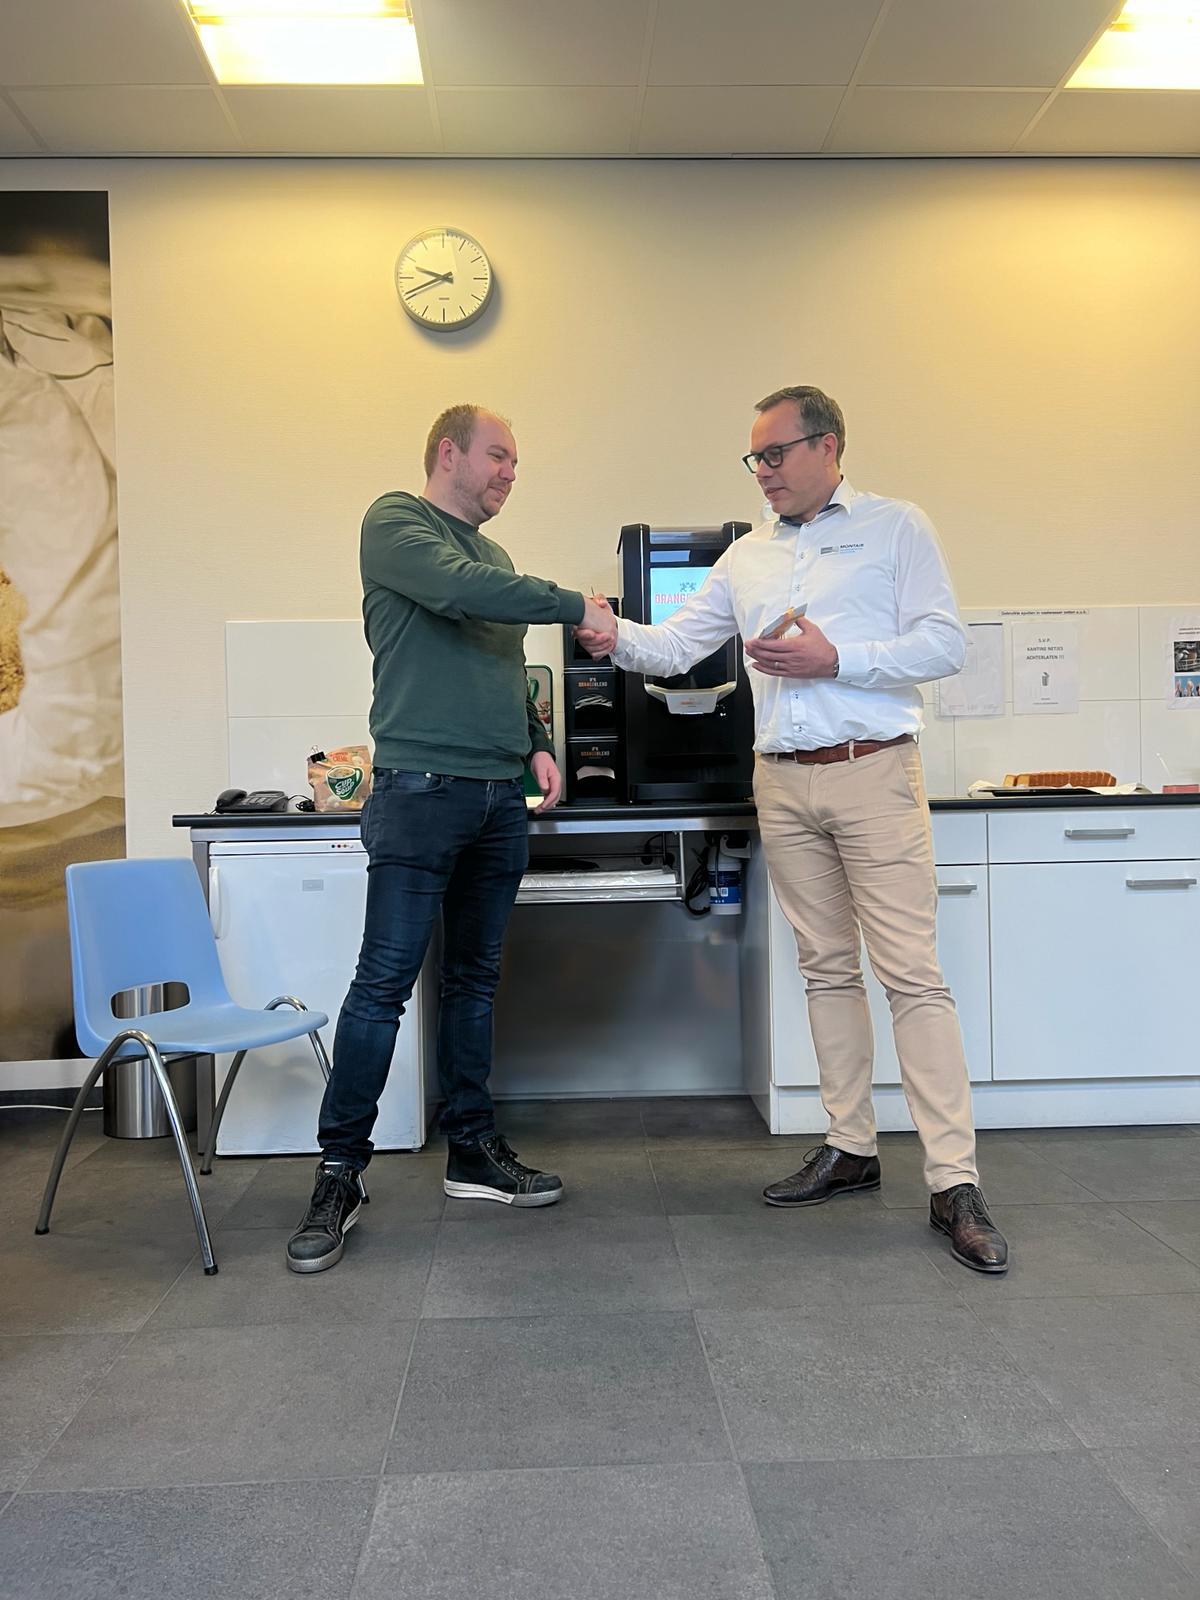 Tom van Asten congratulates Sander Hesen on his anniversary at Montair